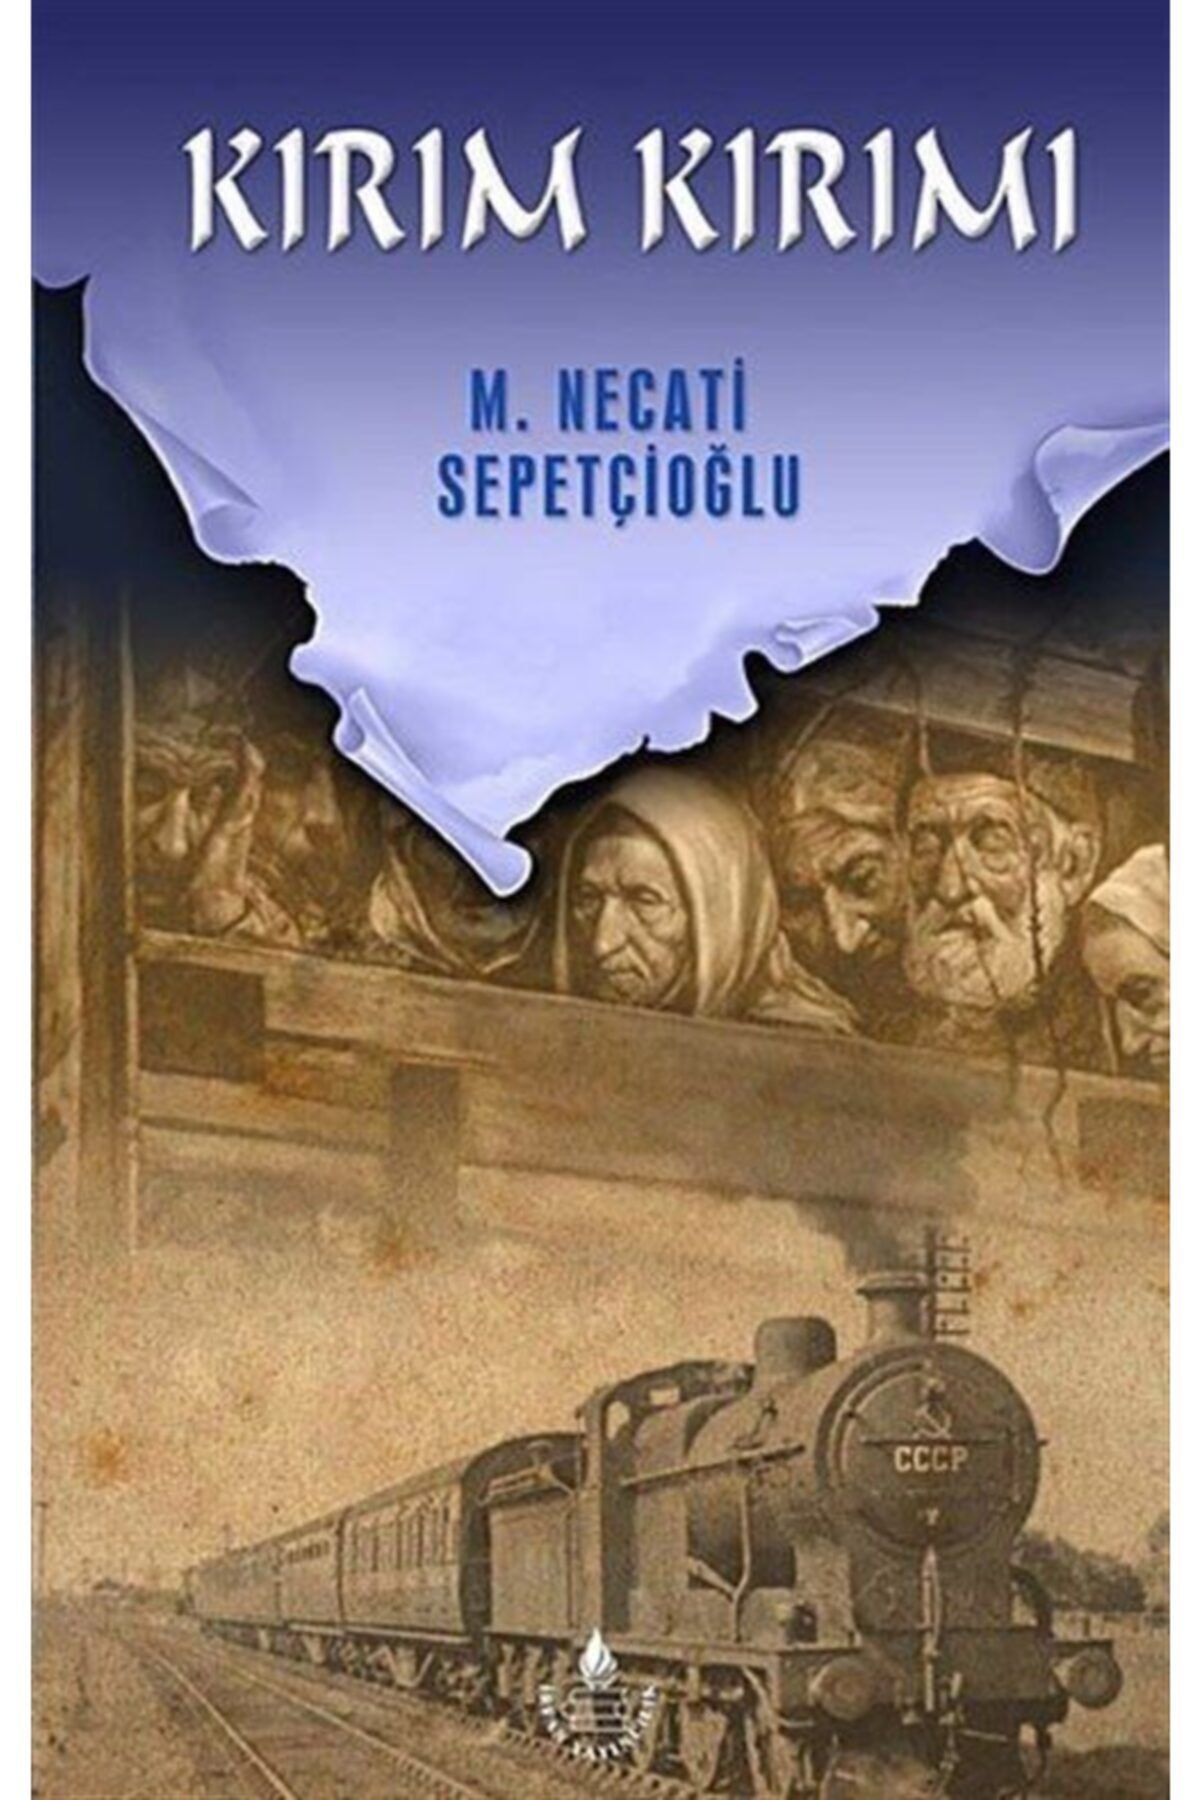 İrfan Yayıncılık Kırım Kırımı - Bütün Eserleri:46 - - Mustafa Necati Sepetçioğlu Kitabı